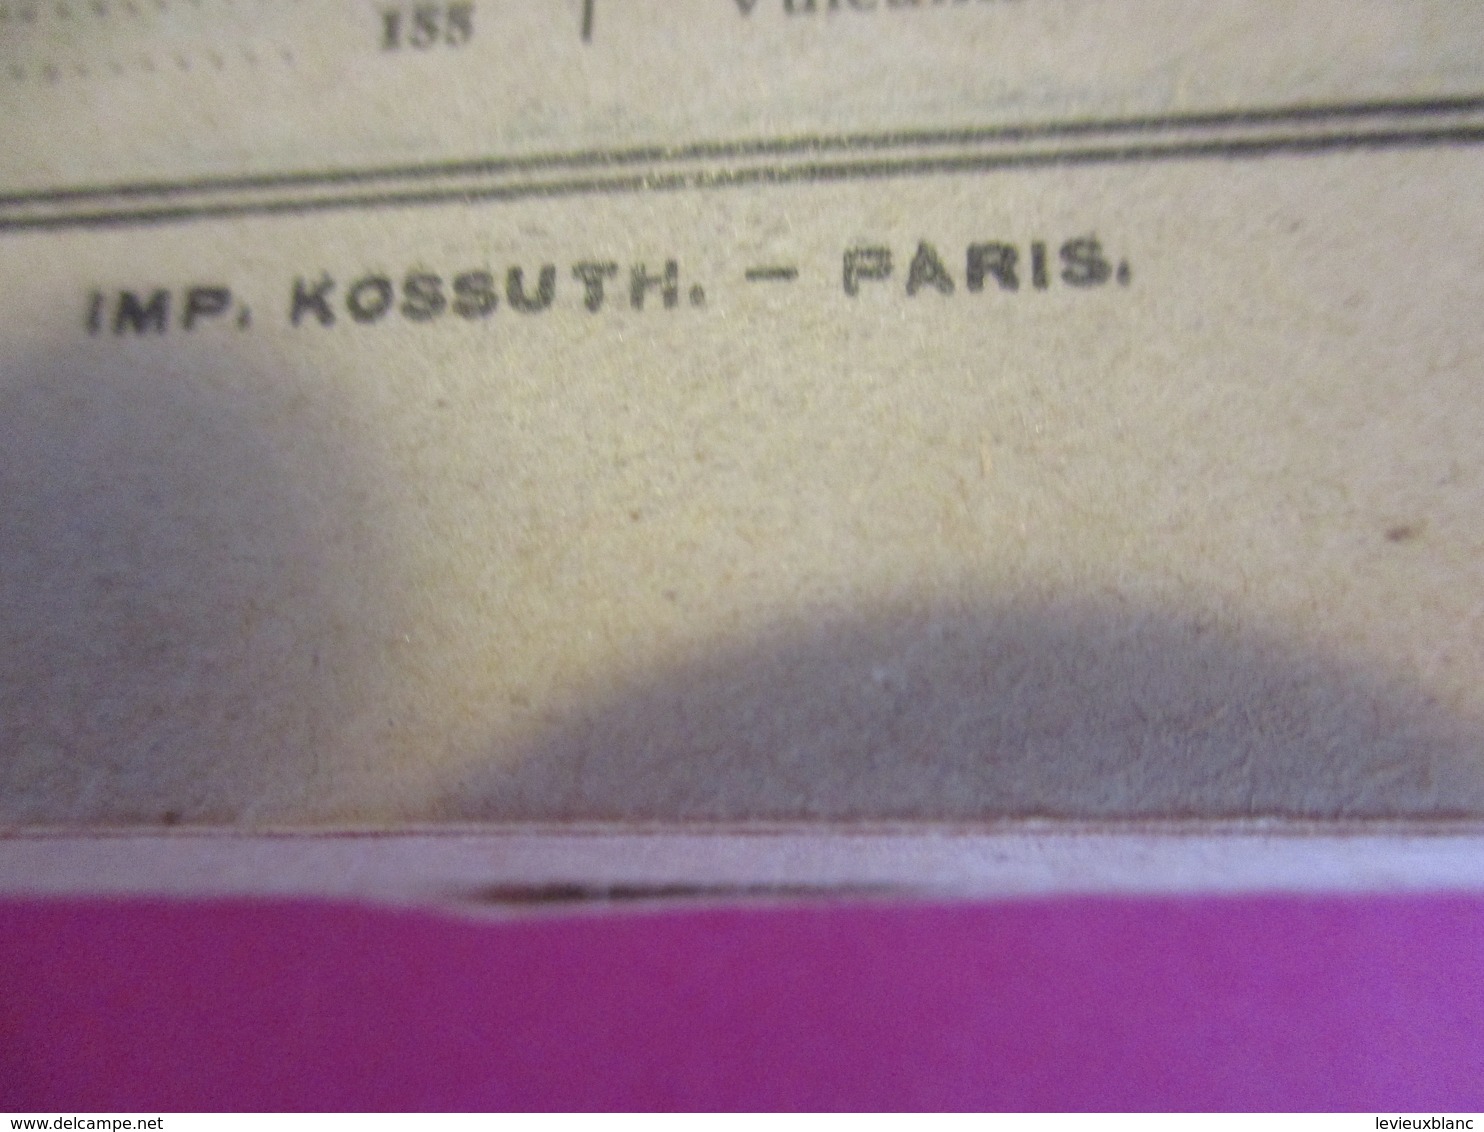 Machines -Outils-Outillages/Mobilier Industriel / Catalogue / Mestre & Blagè/PARIS/1925-26   CAT245